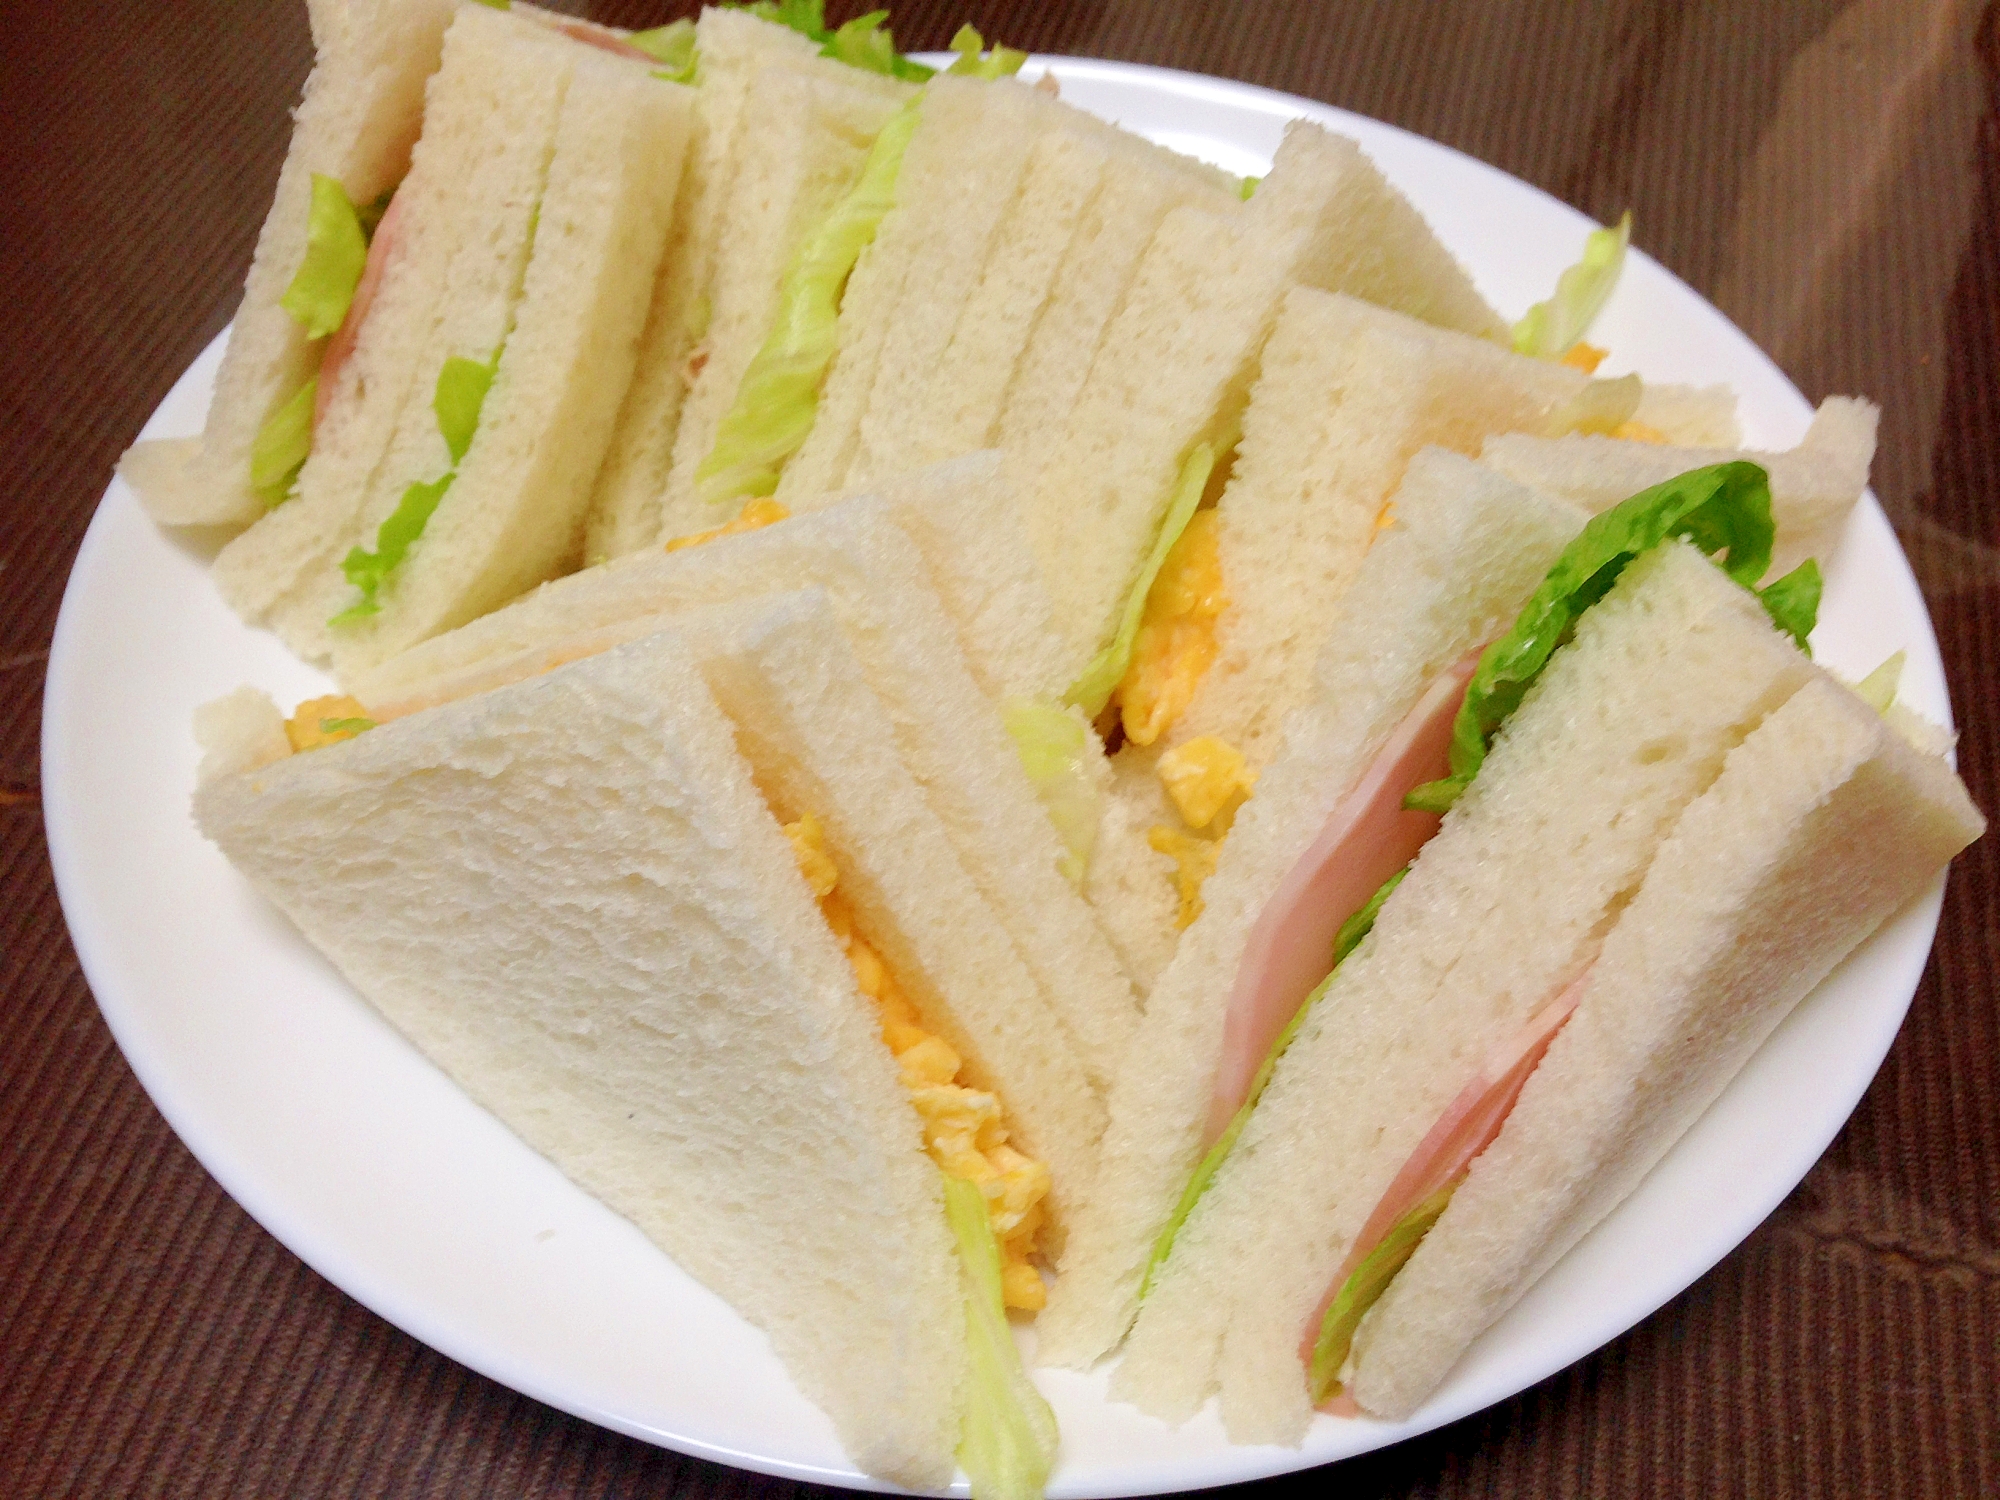 朝食に☆エッグレタスとハムレタスのサンドイッチ